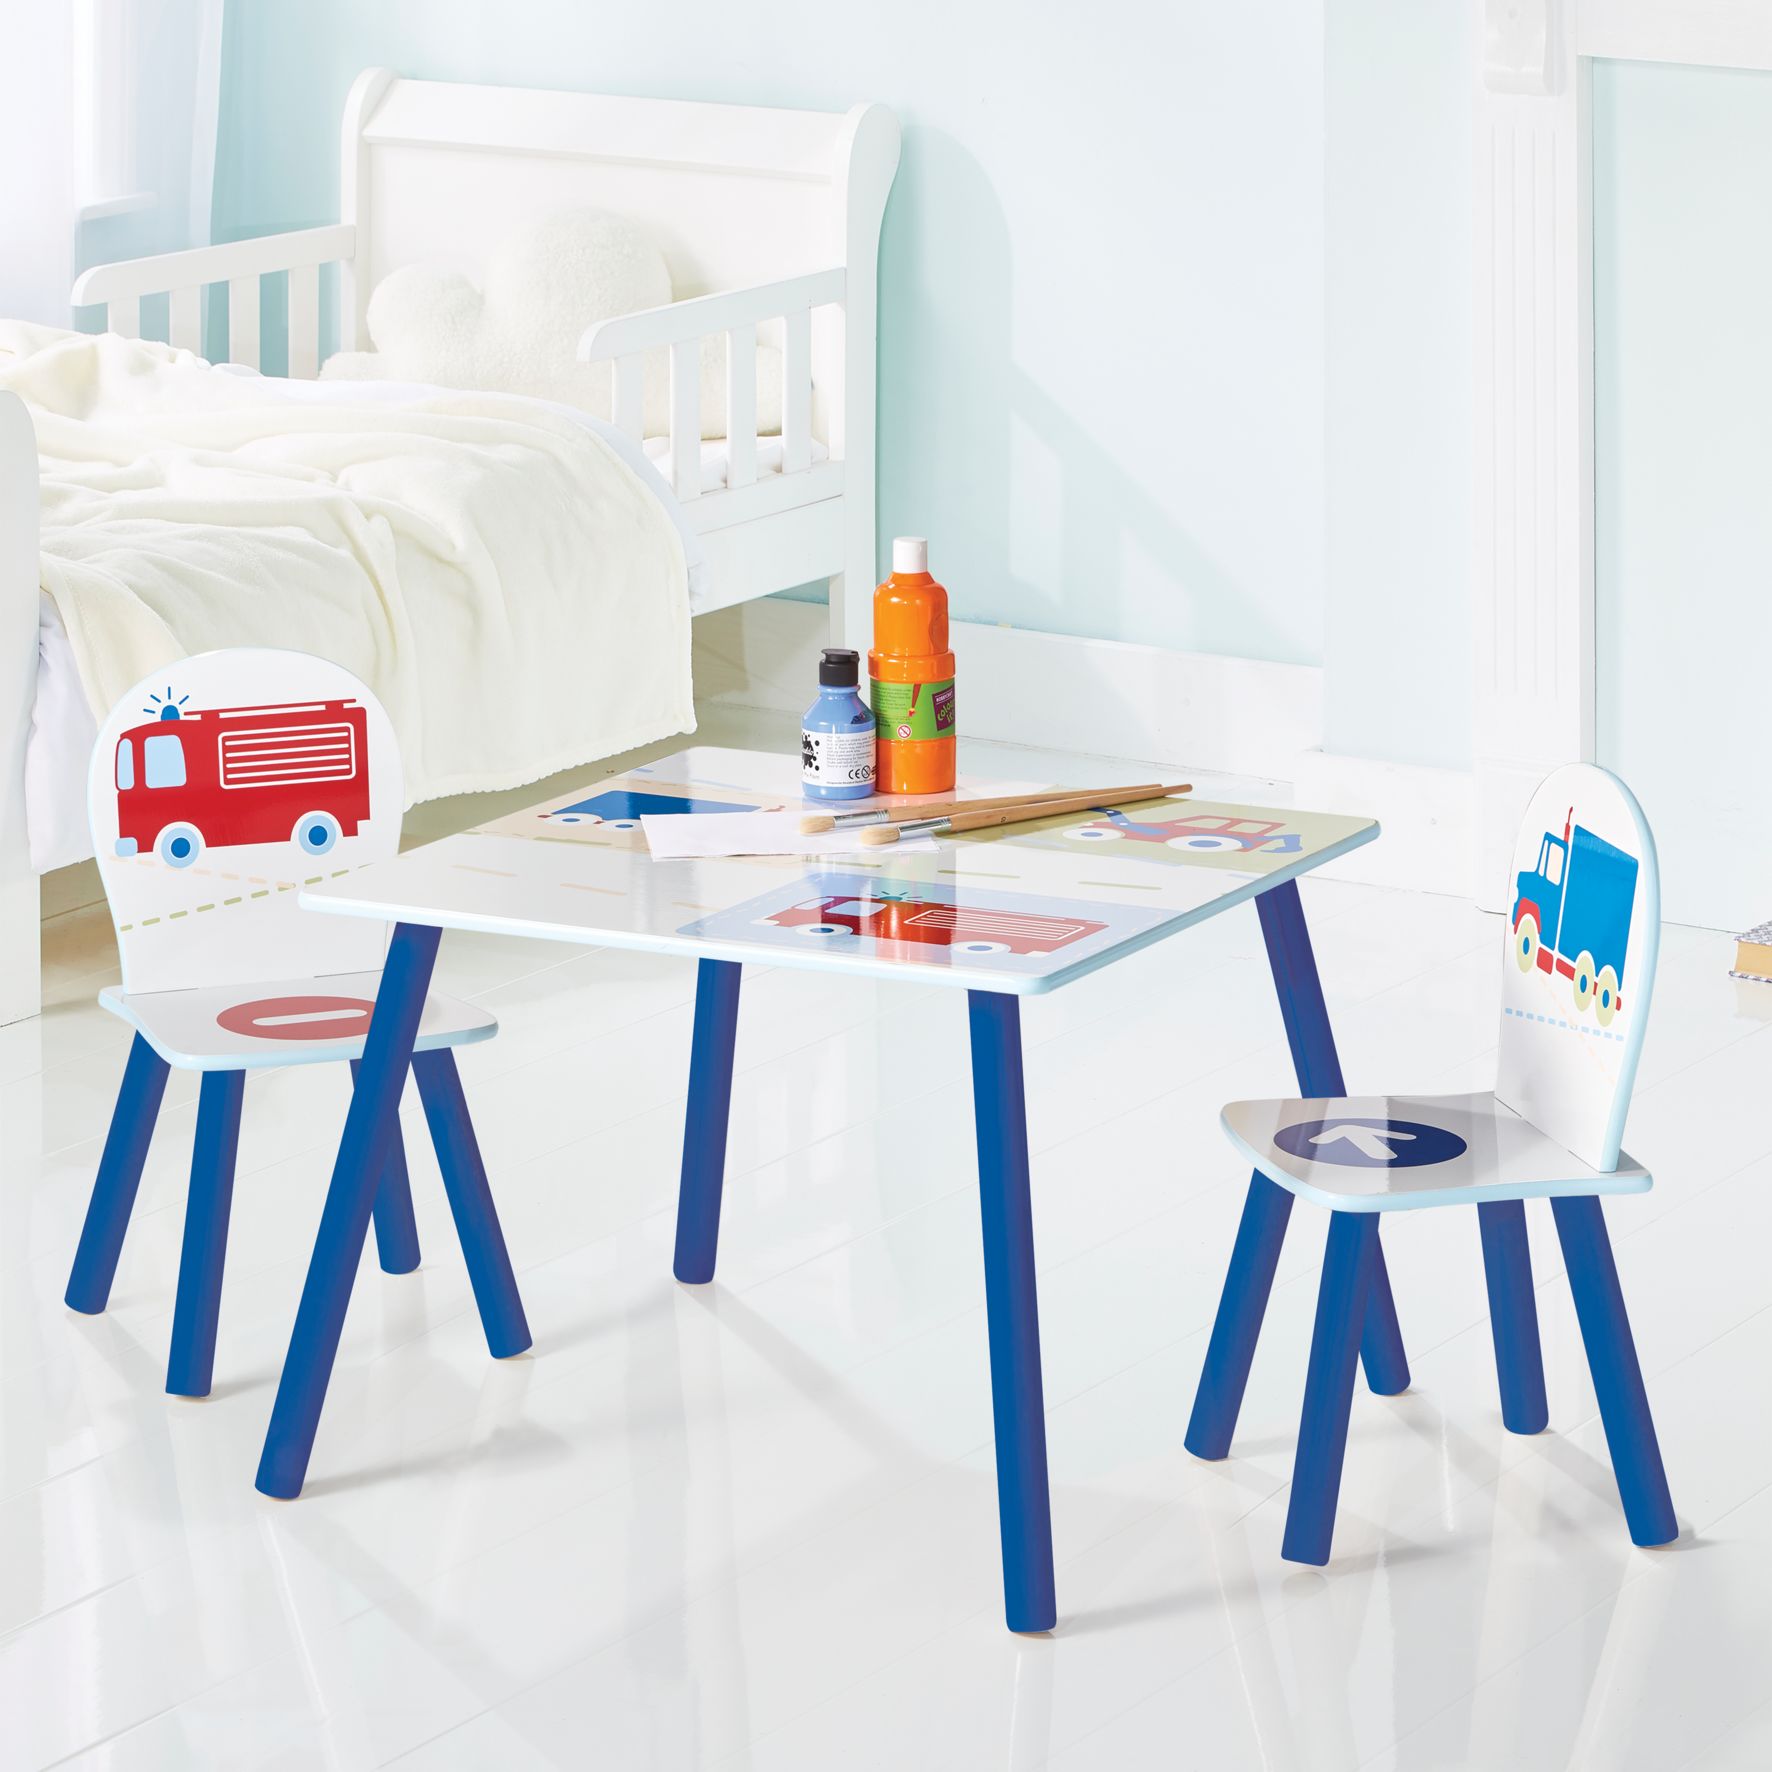 Avior Kids Kindersitzgruppe Kindermöbel Kinderstuhl & Tisch Kindertisch 